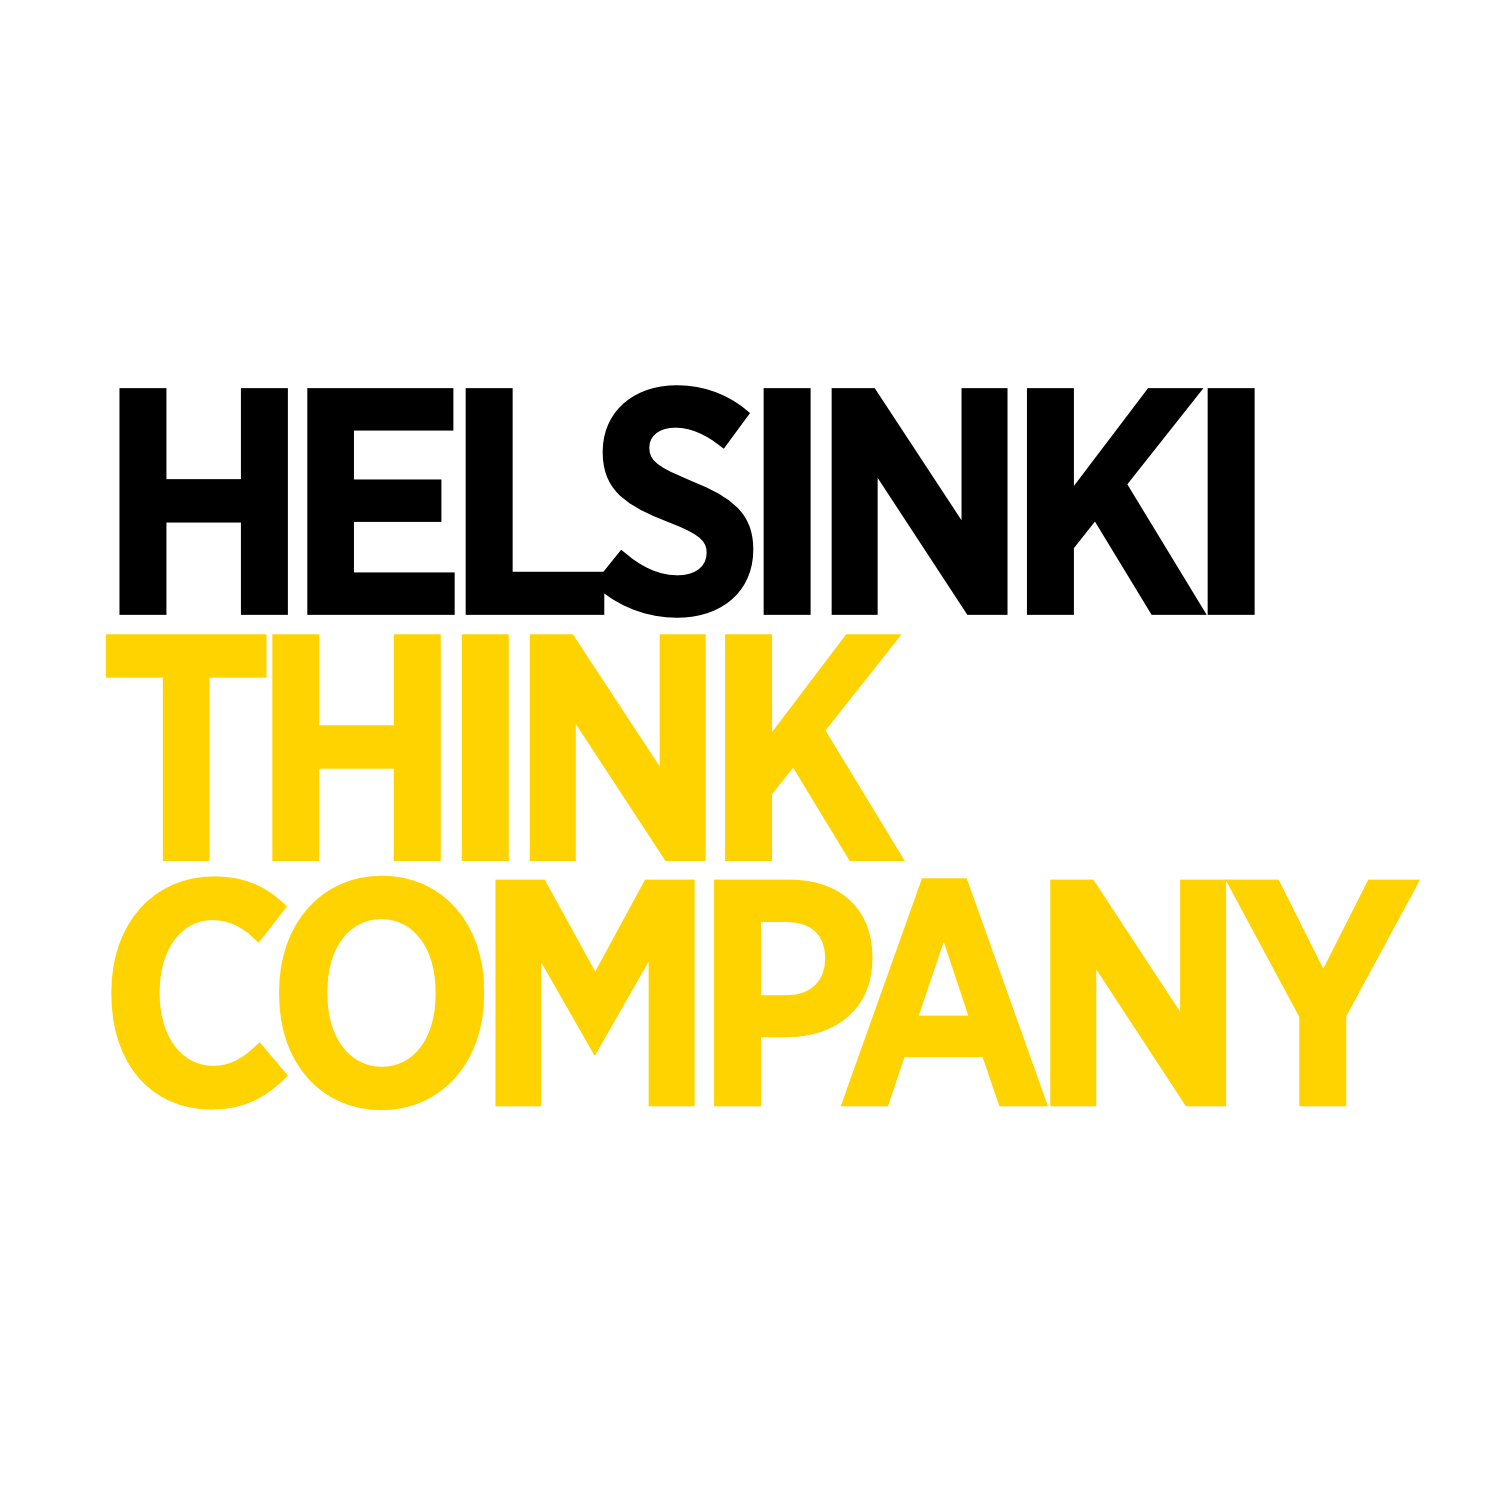 Helsinki Think Company - Kumpula